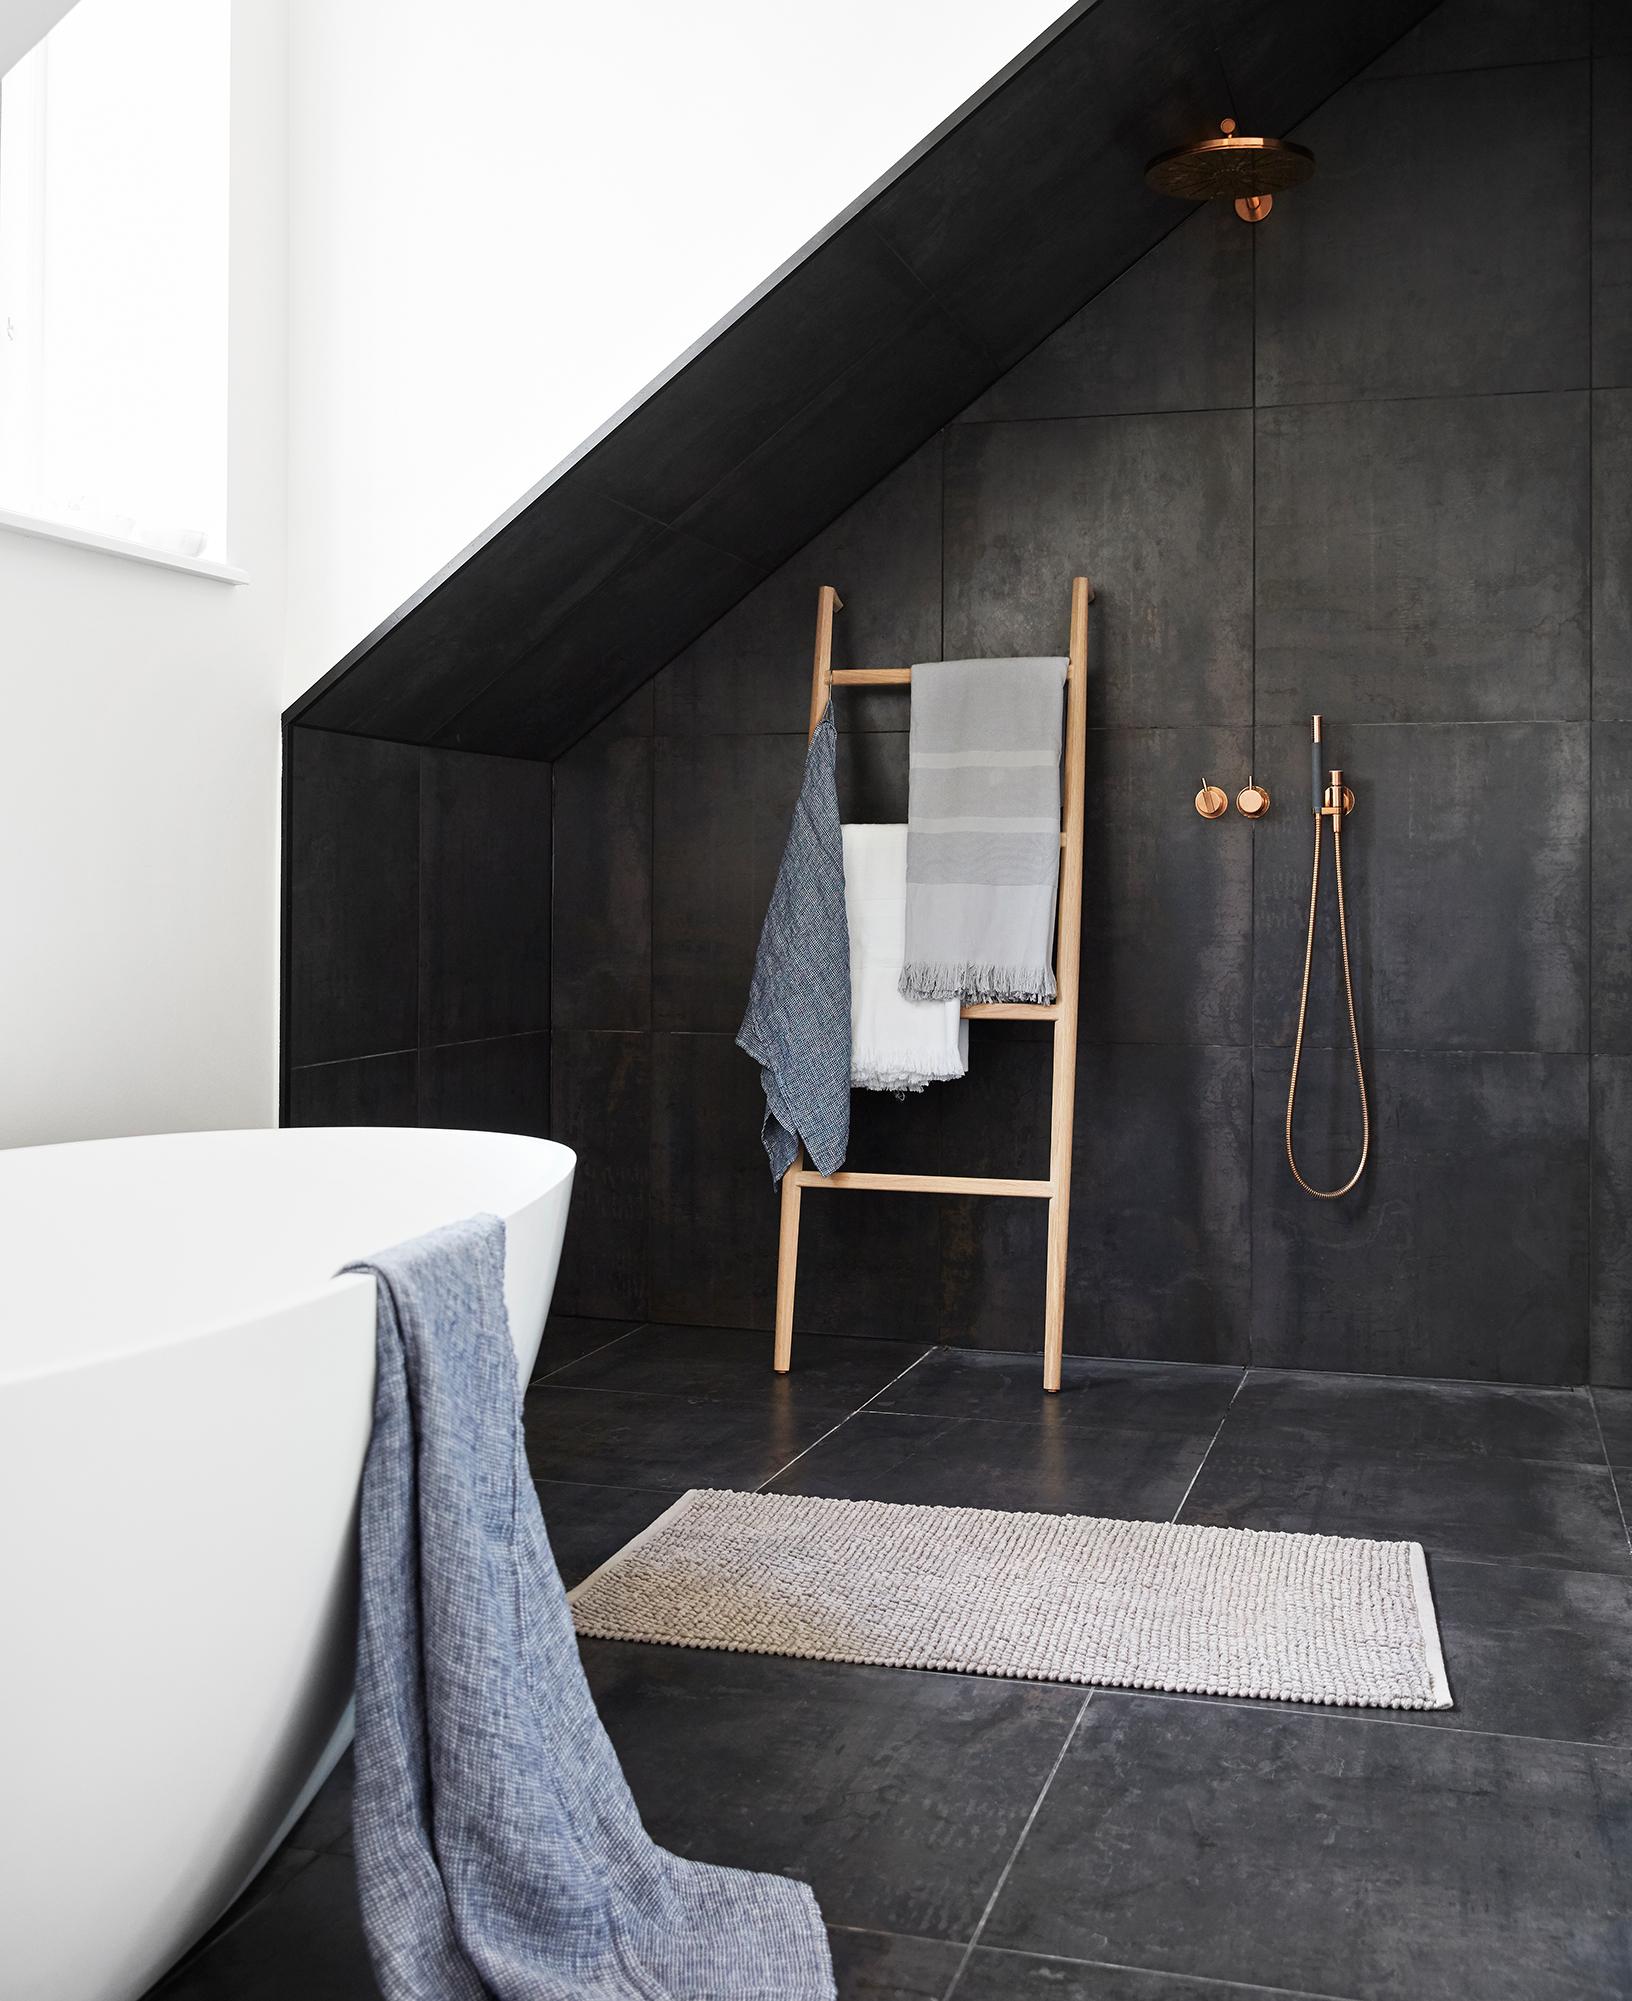 Offene Dusche im modernen Badezimmer #teppich #badewanne #badezimmer #dachgeschoss #offenedusche #handtuchhalter #steinfußboden ©By Nord